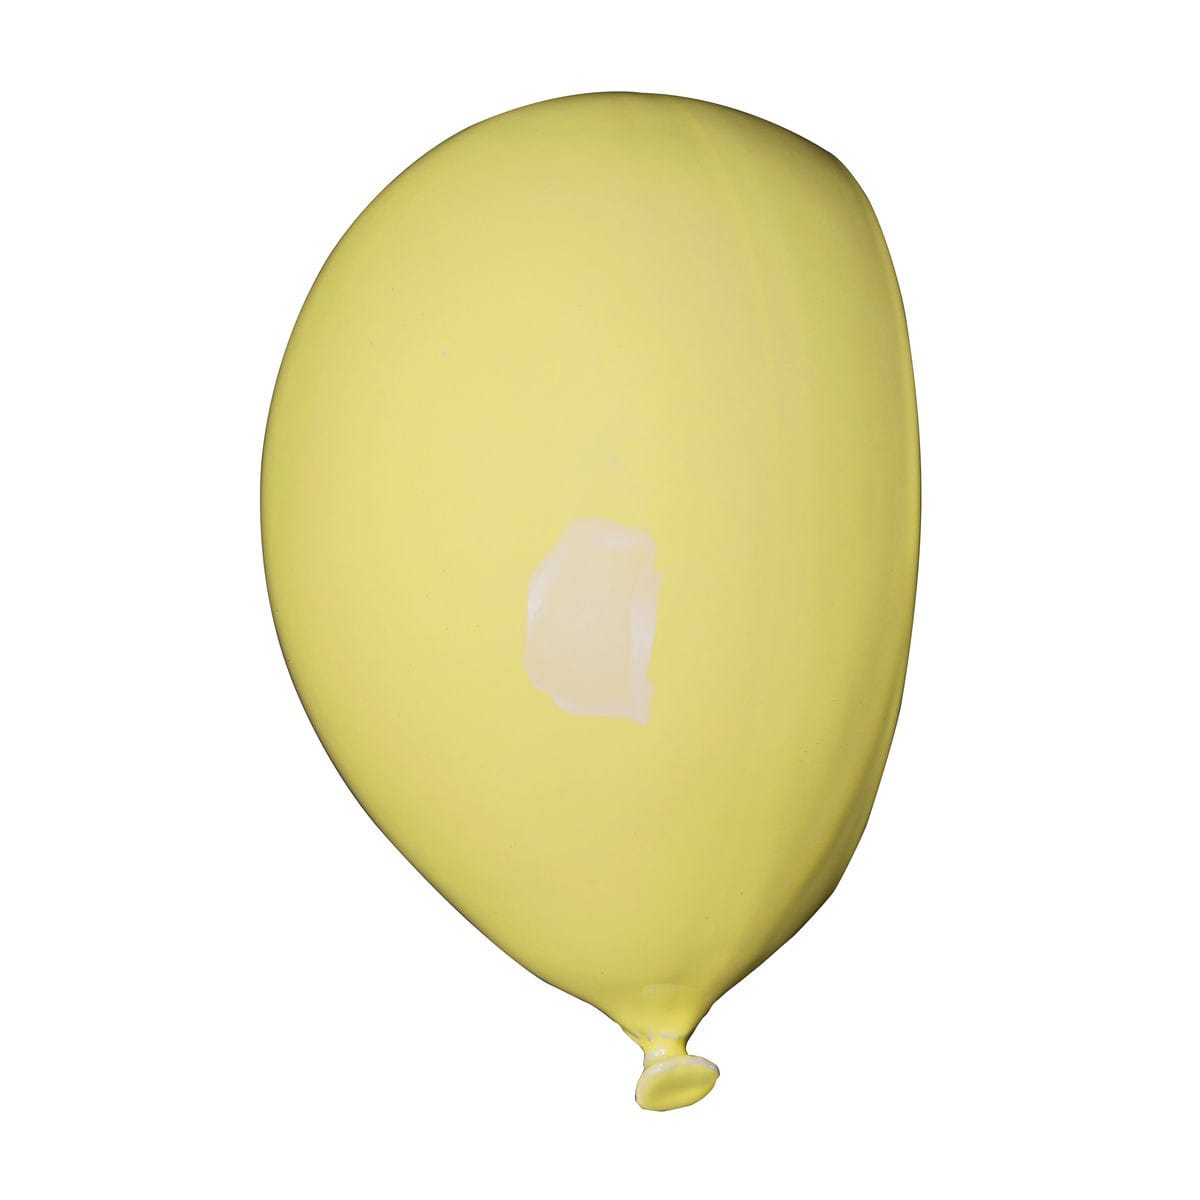 Umidificatore per radiatore in ceramica a forma di palloncino, collezione Balloon, colore giallo